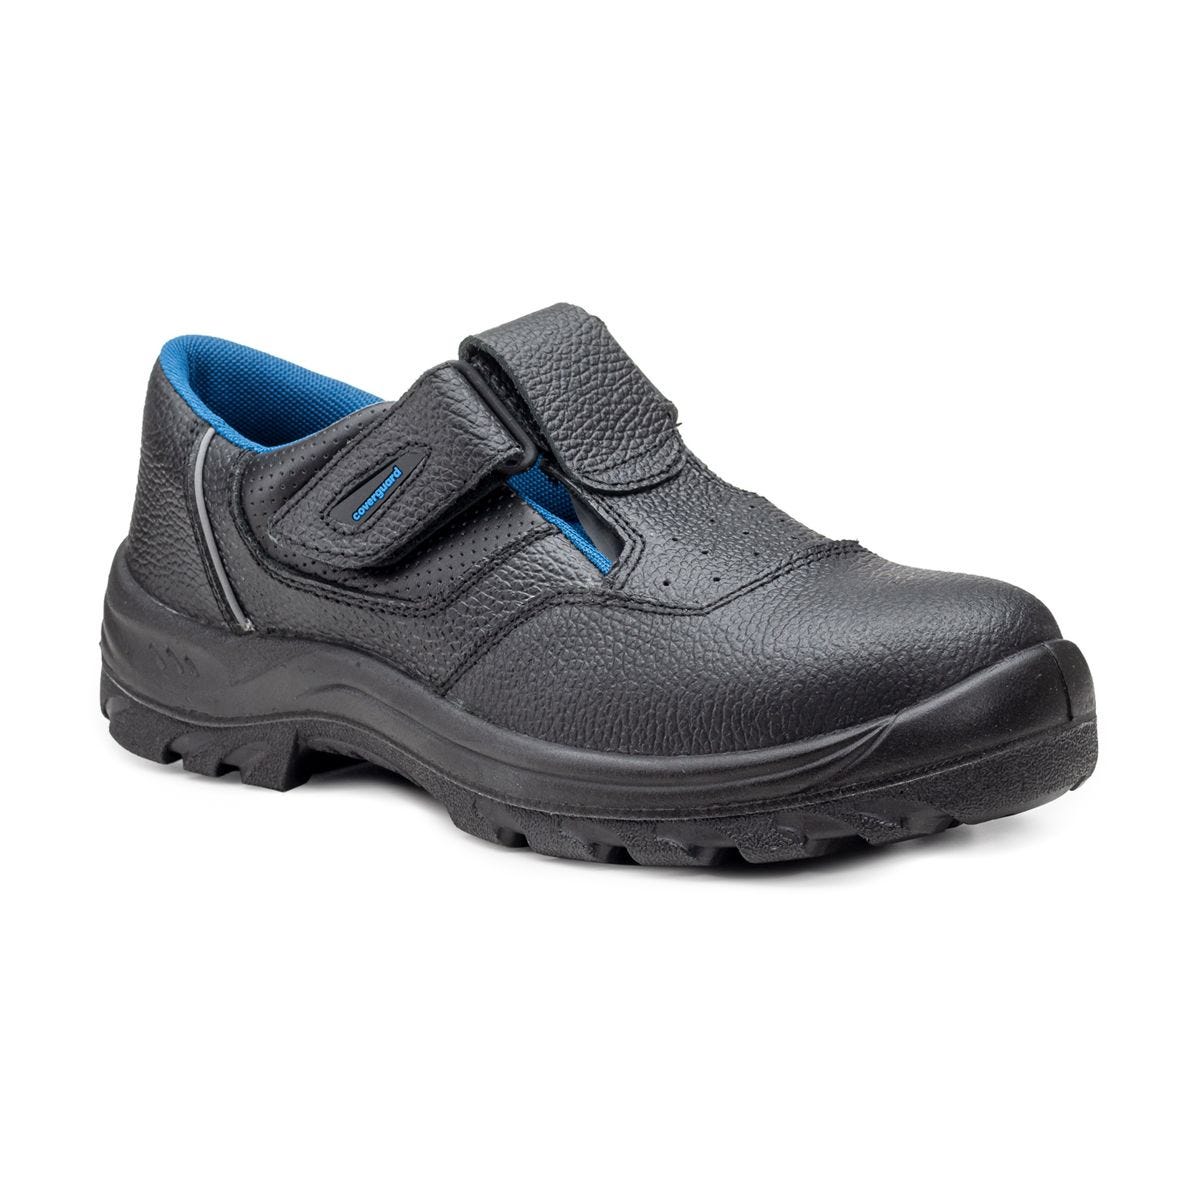 Sandales de sécurité basses Bosco II noir - Coverguard - Taille 40 0